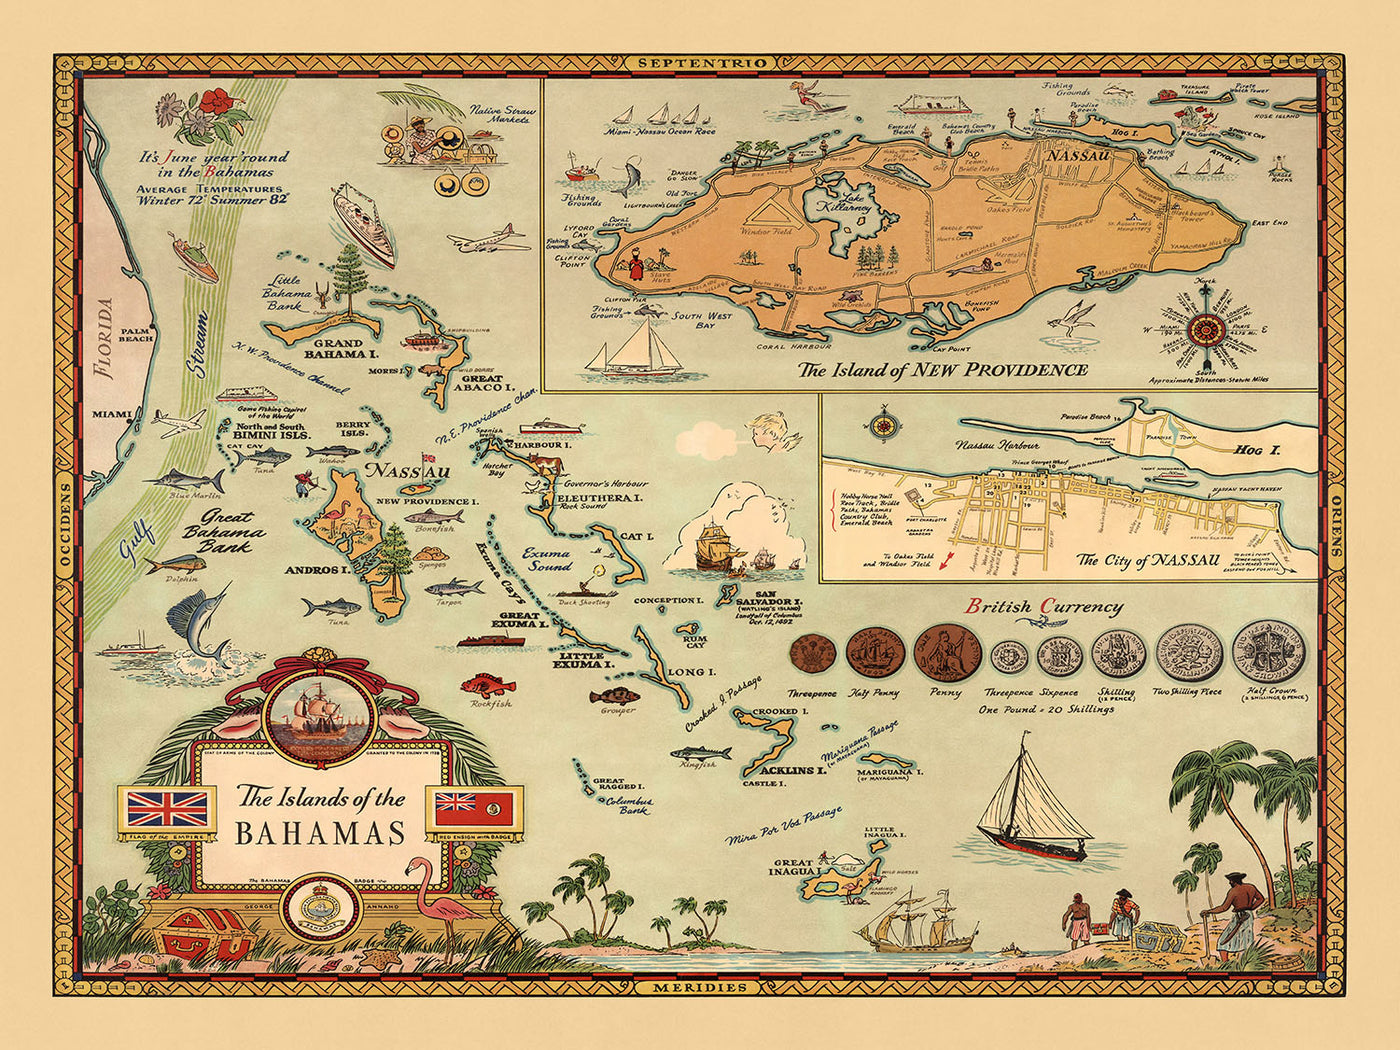 Ancienne carte des Bahamas, 1951 : carte thématique illustrée de Nassau, de New Providence et de la vie des Bahamas